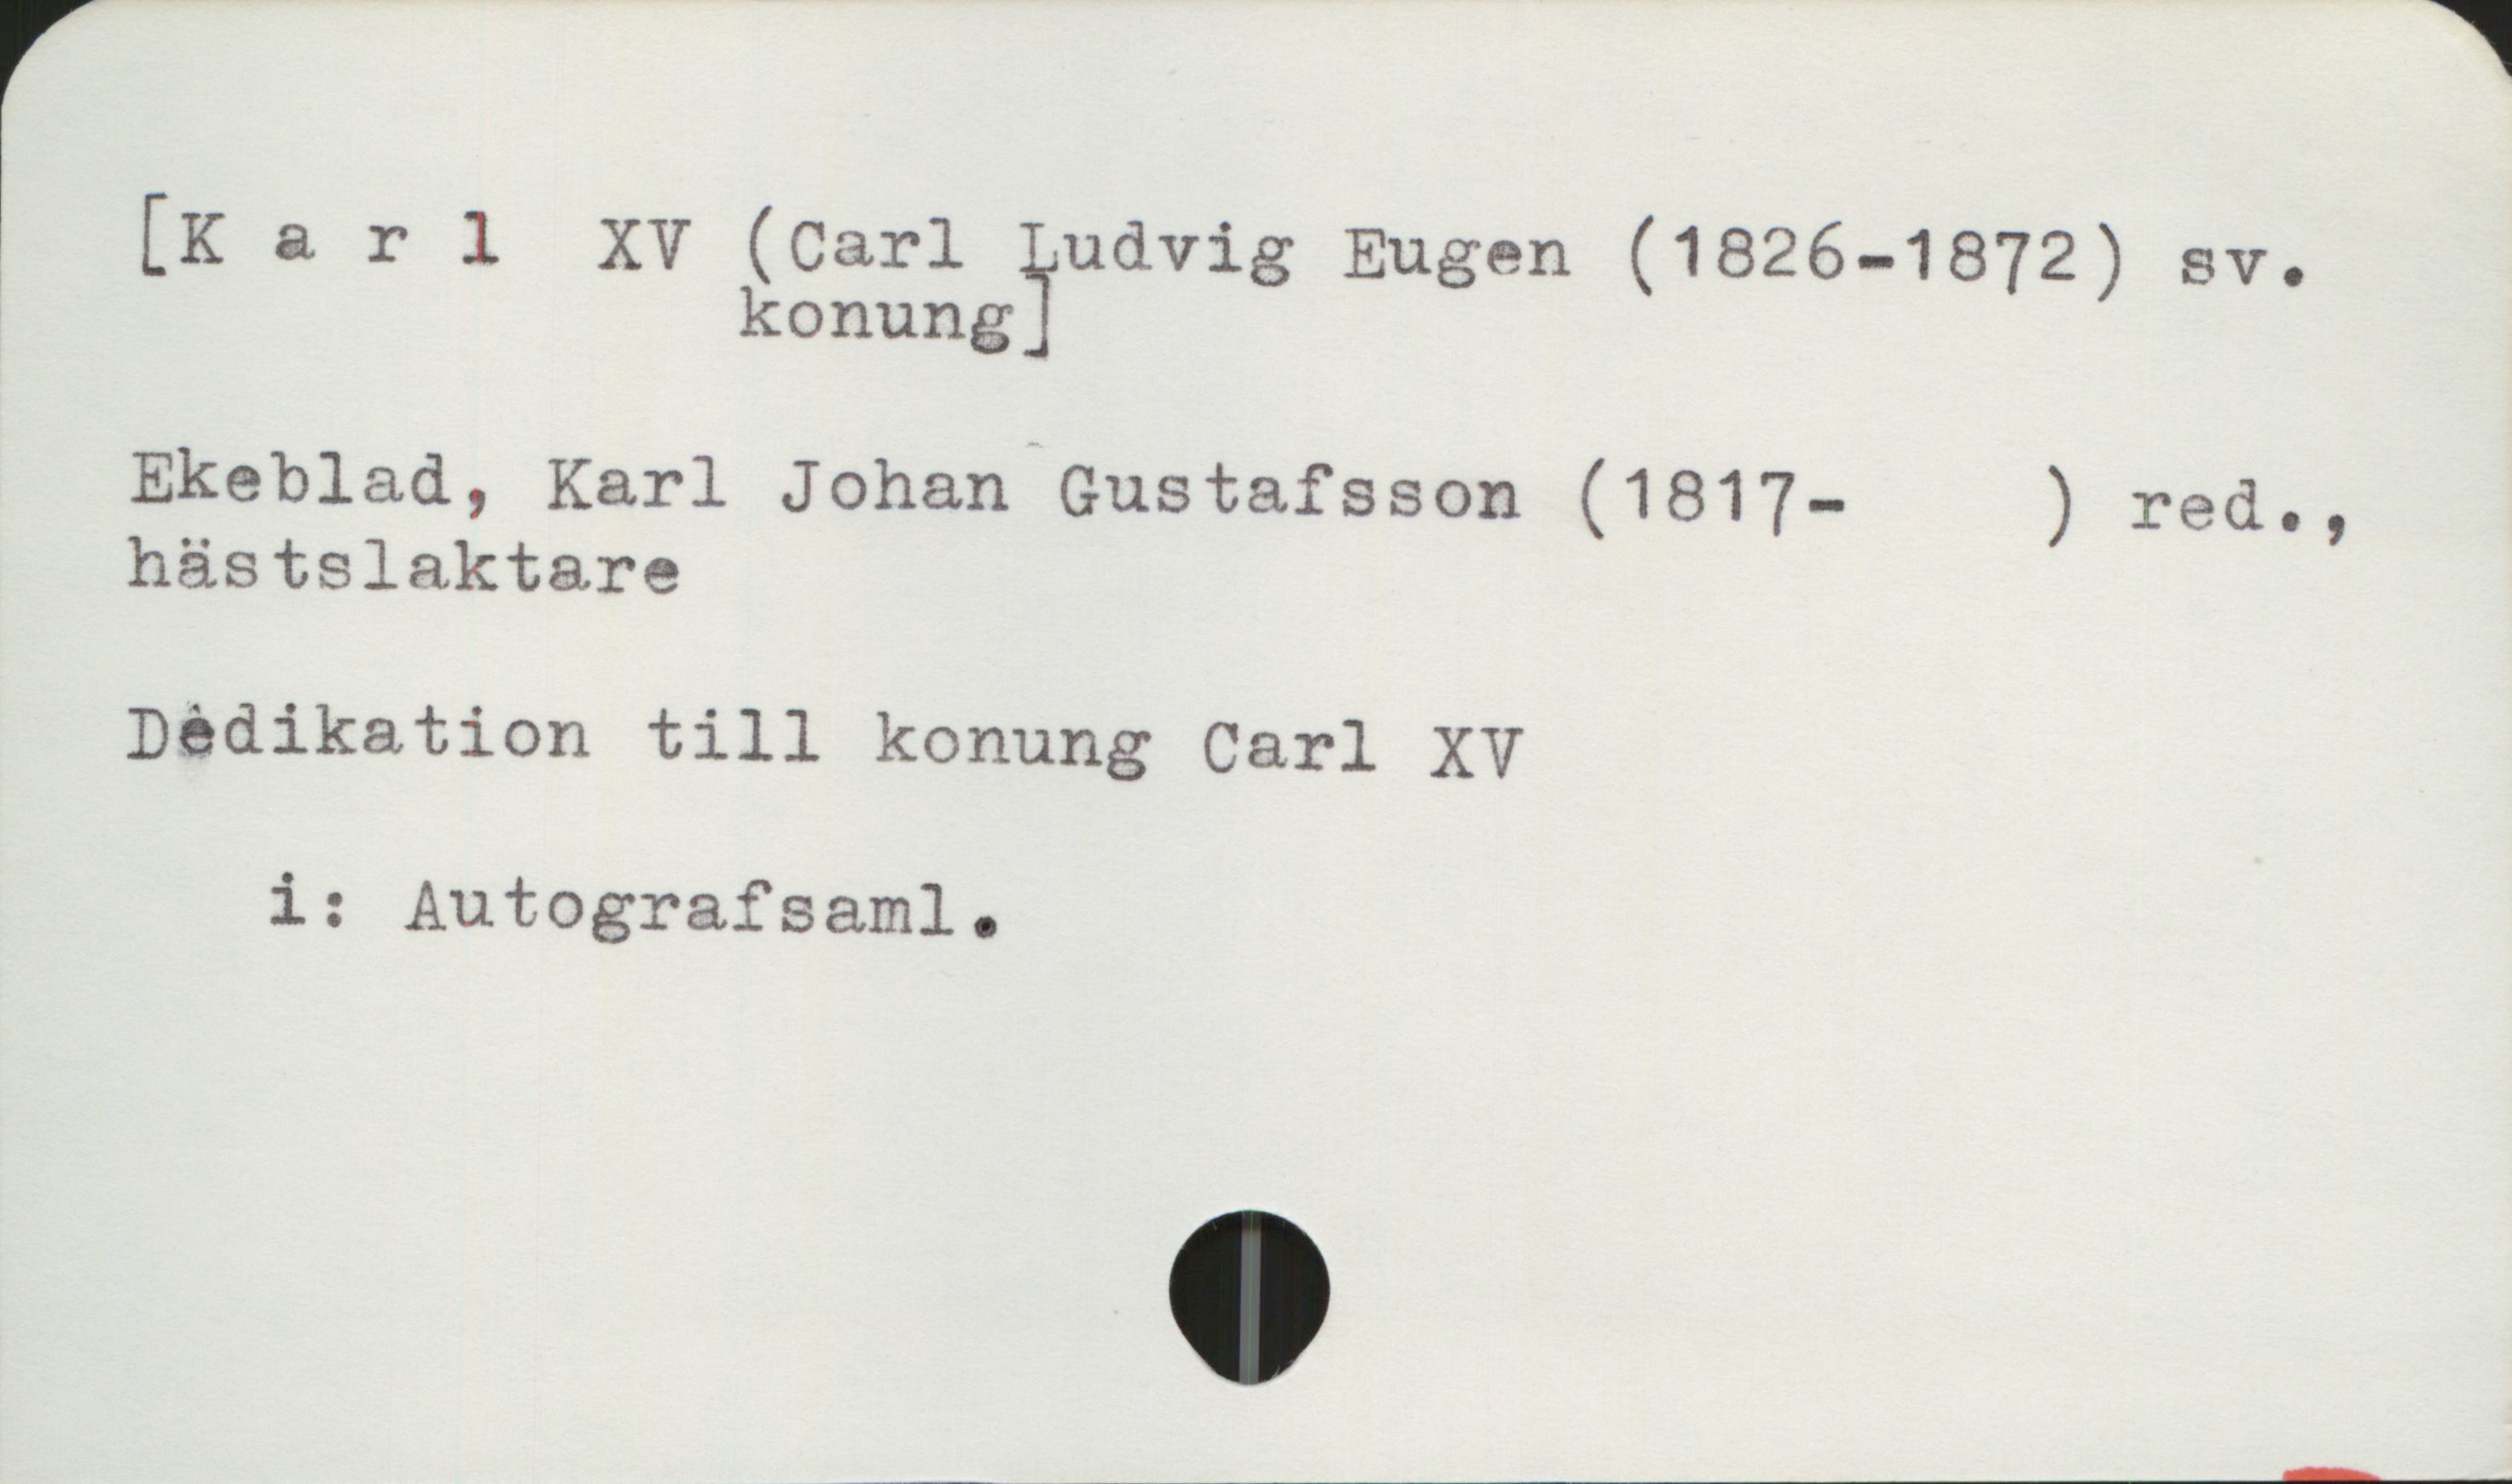  [Karl XV (Carl Ludvig Eugen (1826-1872) sv.
konung?
Ekeblad, Karl Johan Gustafsson (1817- ) red.,
hästslaktare
Dedikation till konung Carl XV
i: Autografsaml.

